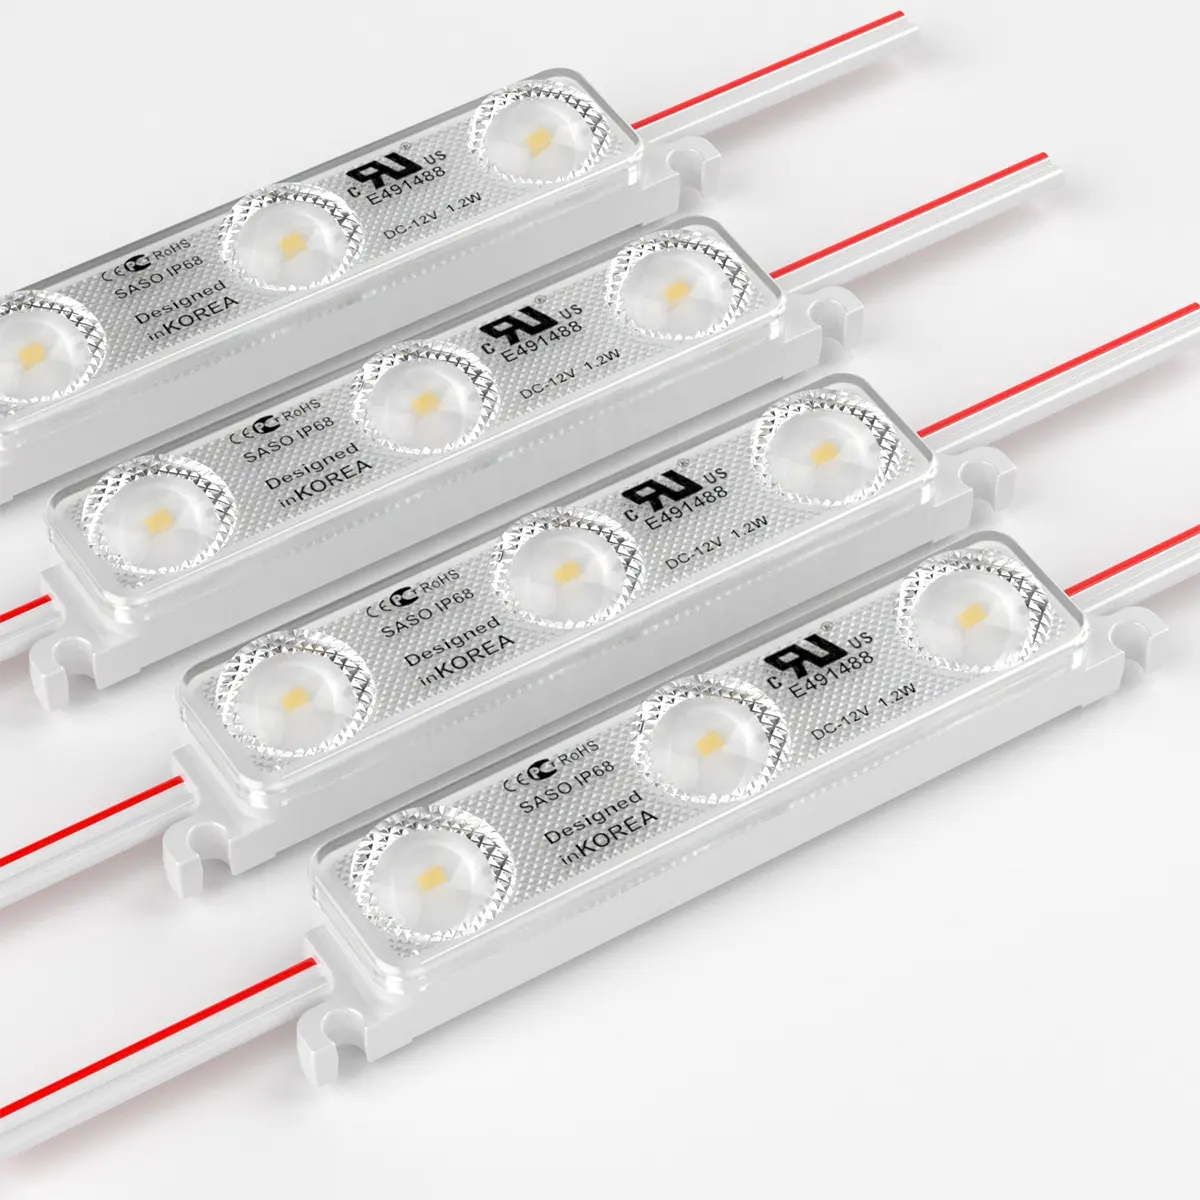 Lensa modul LED injeksi daya tinggi 160 derajat modul 2835 LED 12v